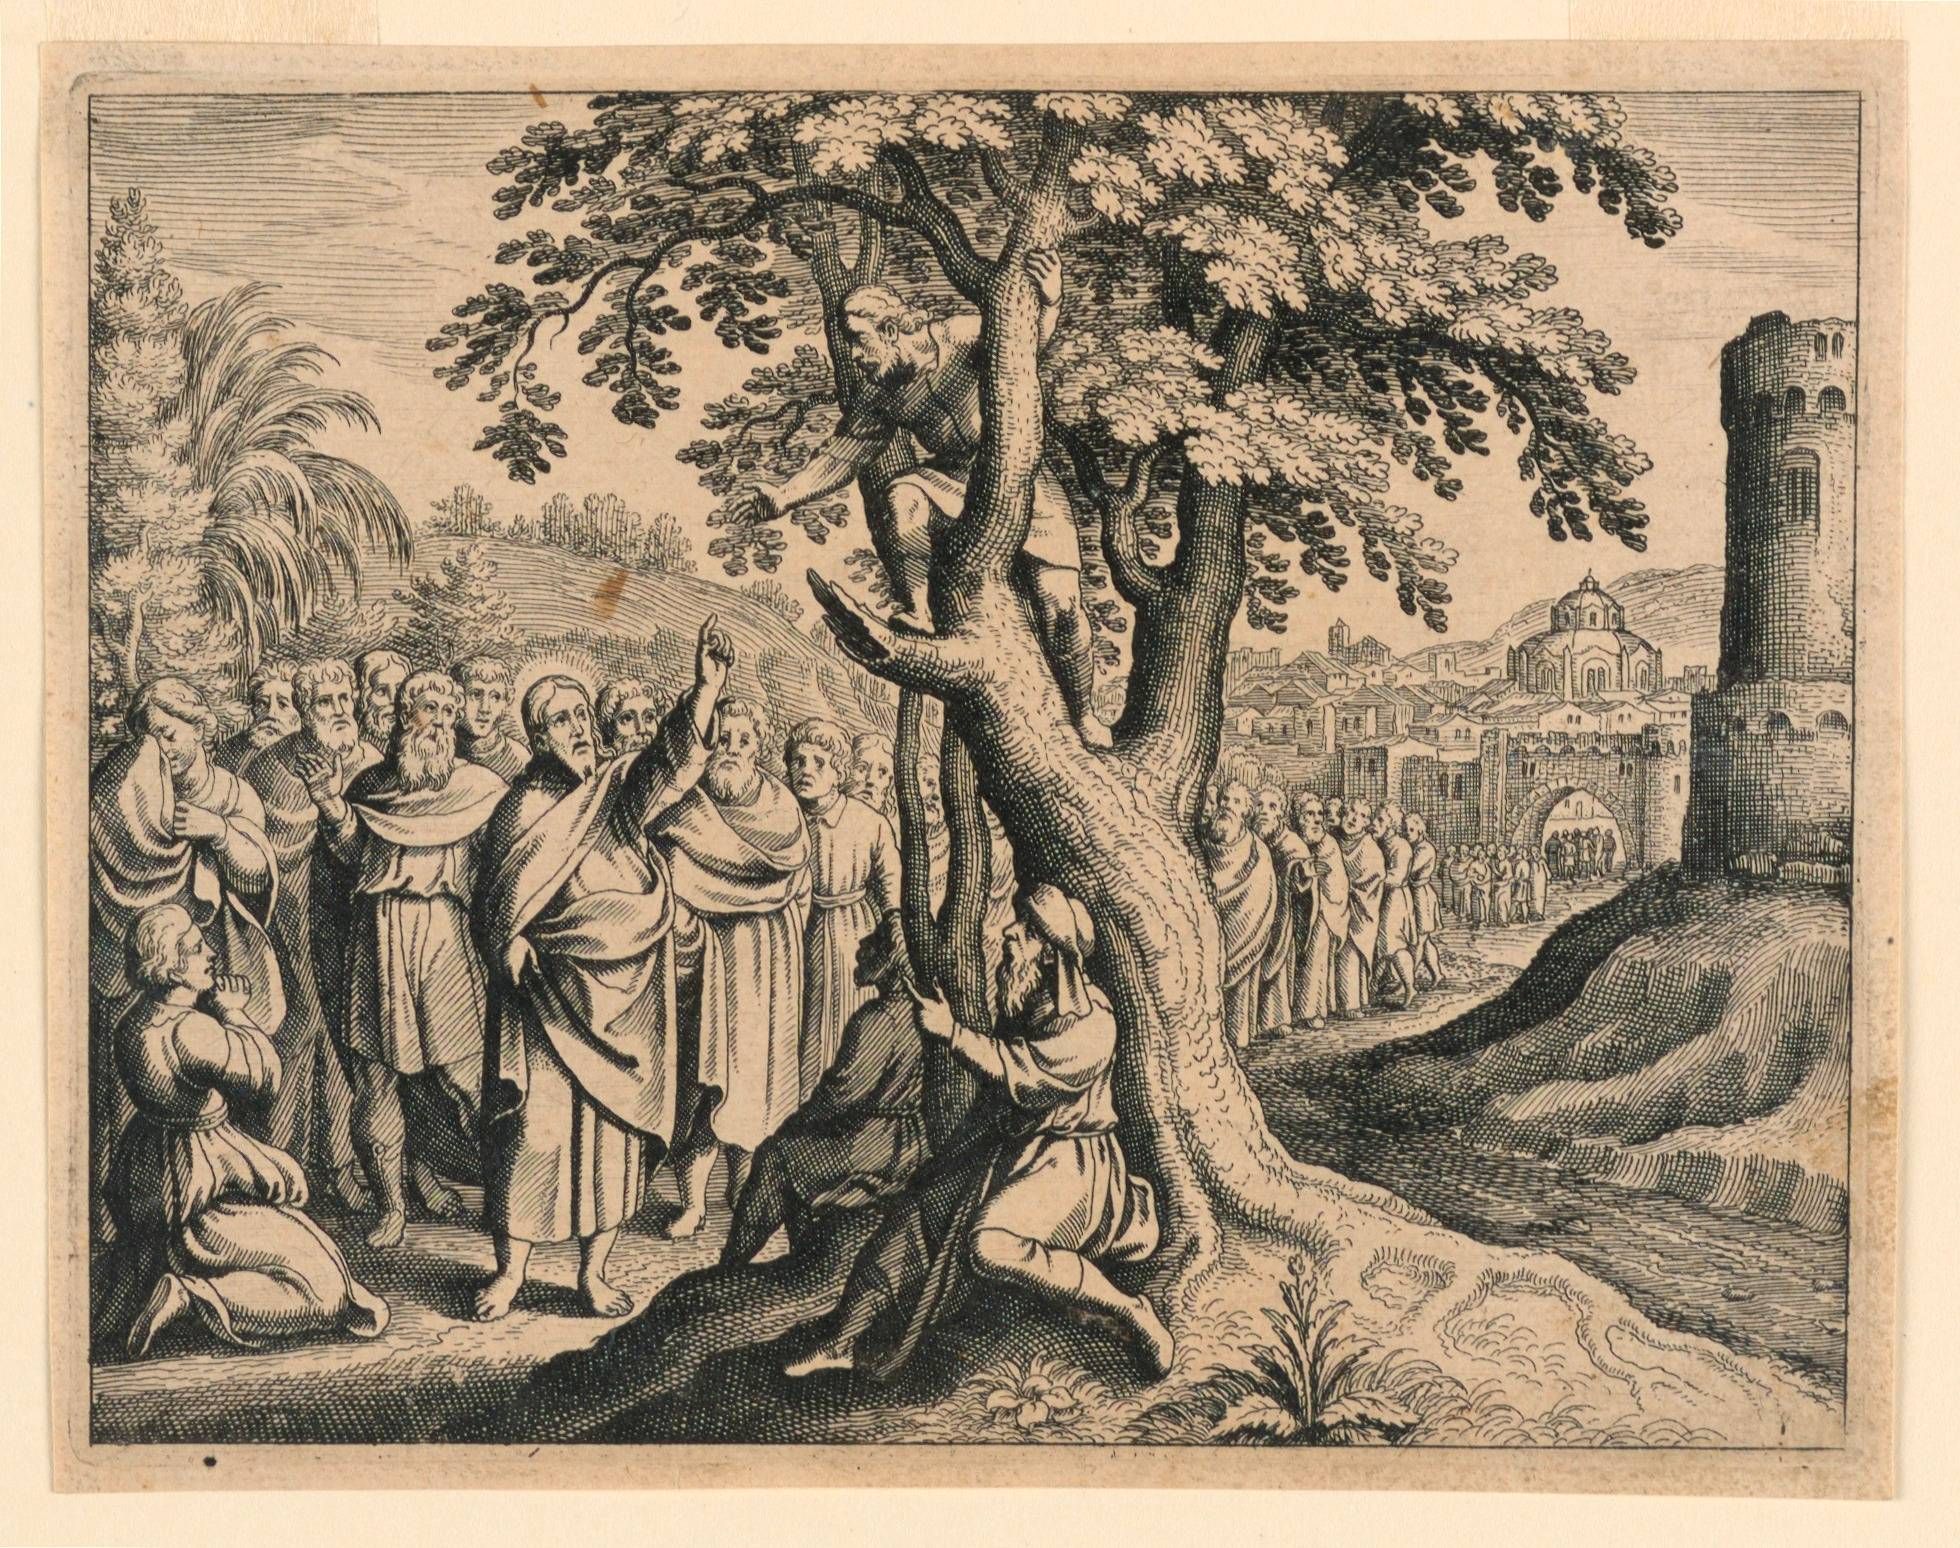 Zacchaeus the Publican